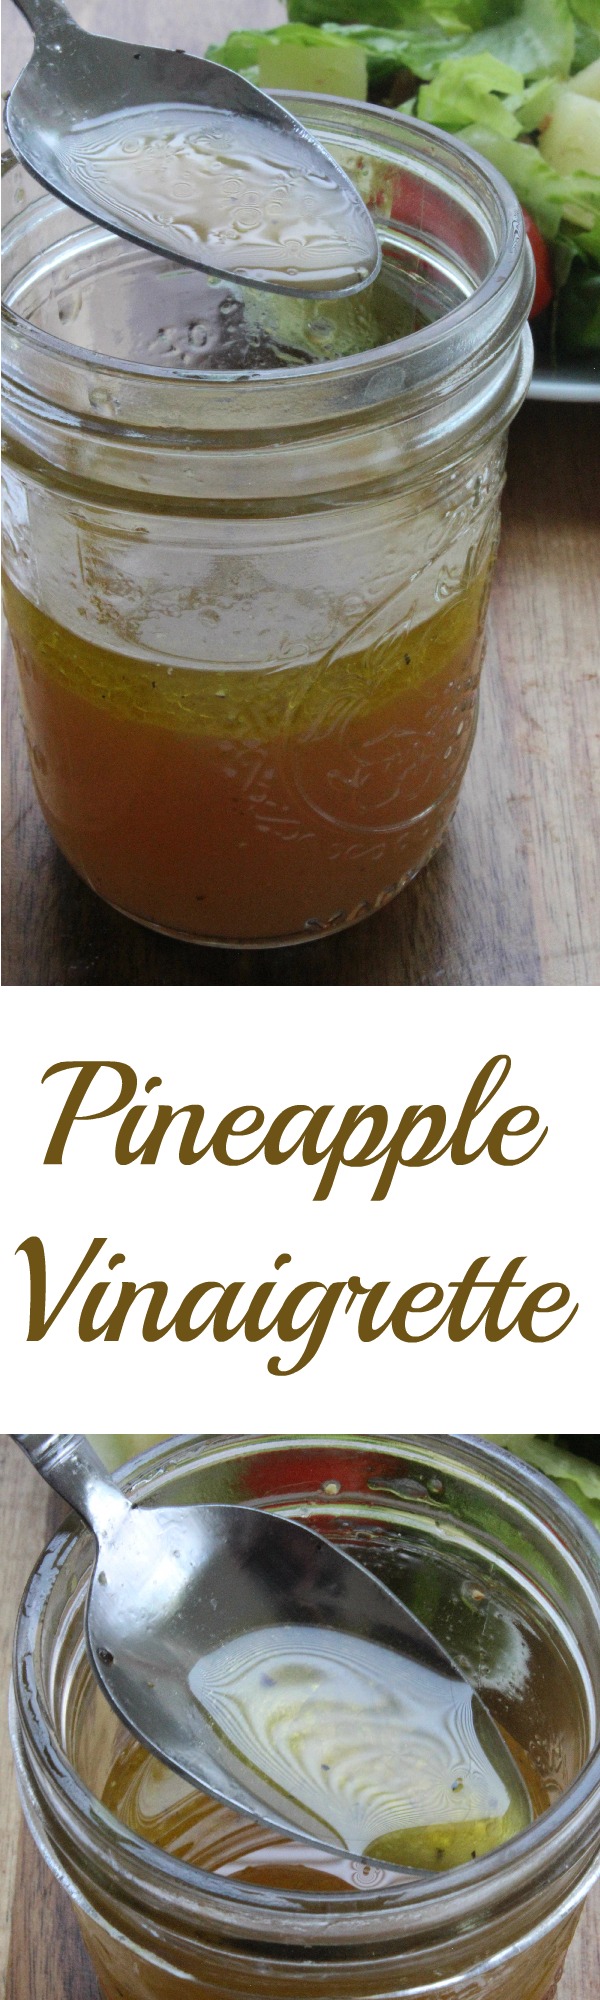 Pineapple Vinaigrette Homemade